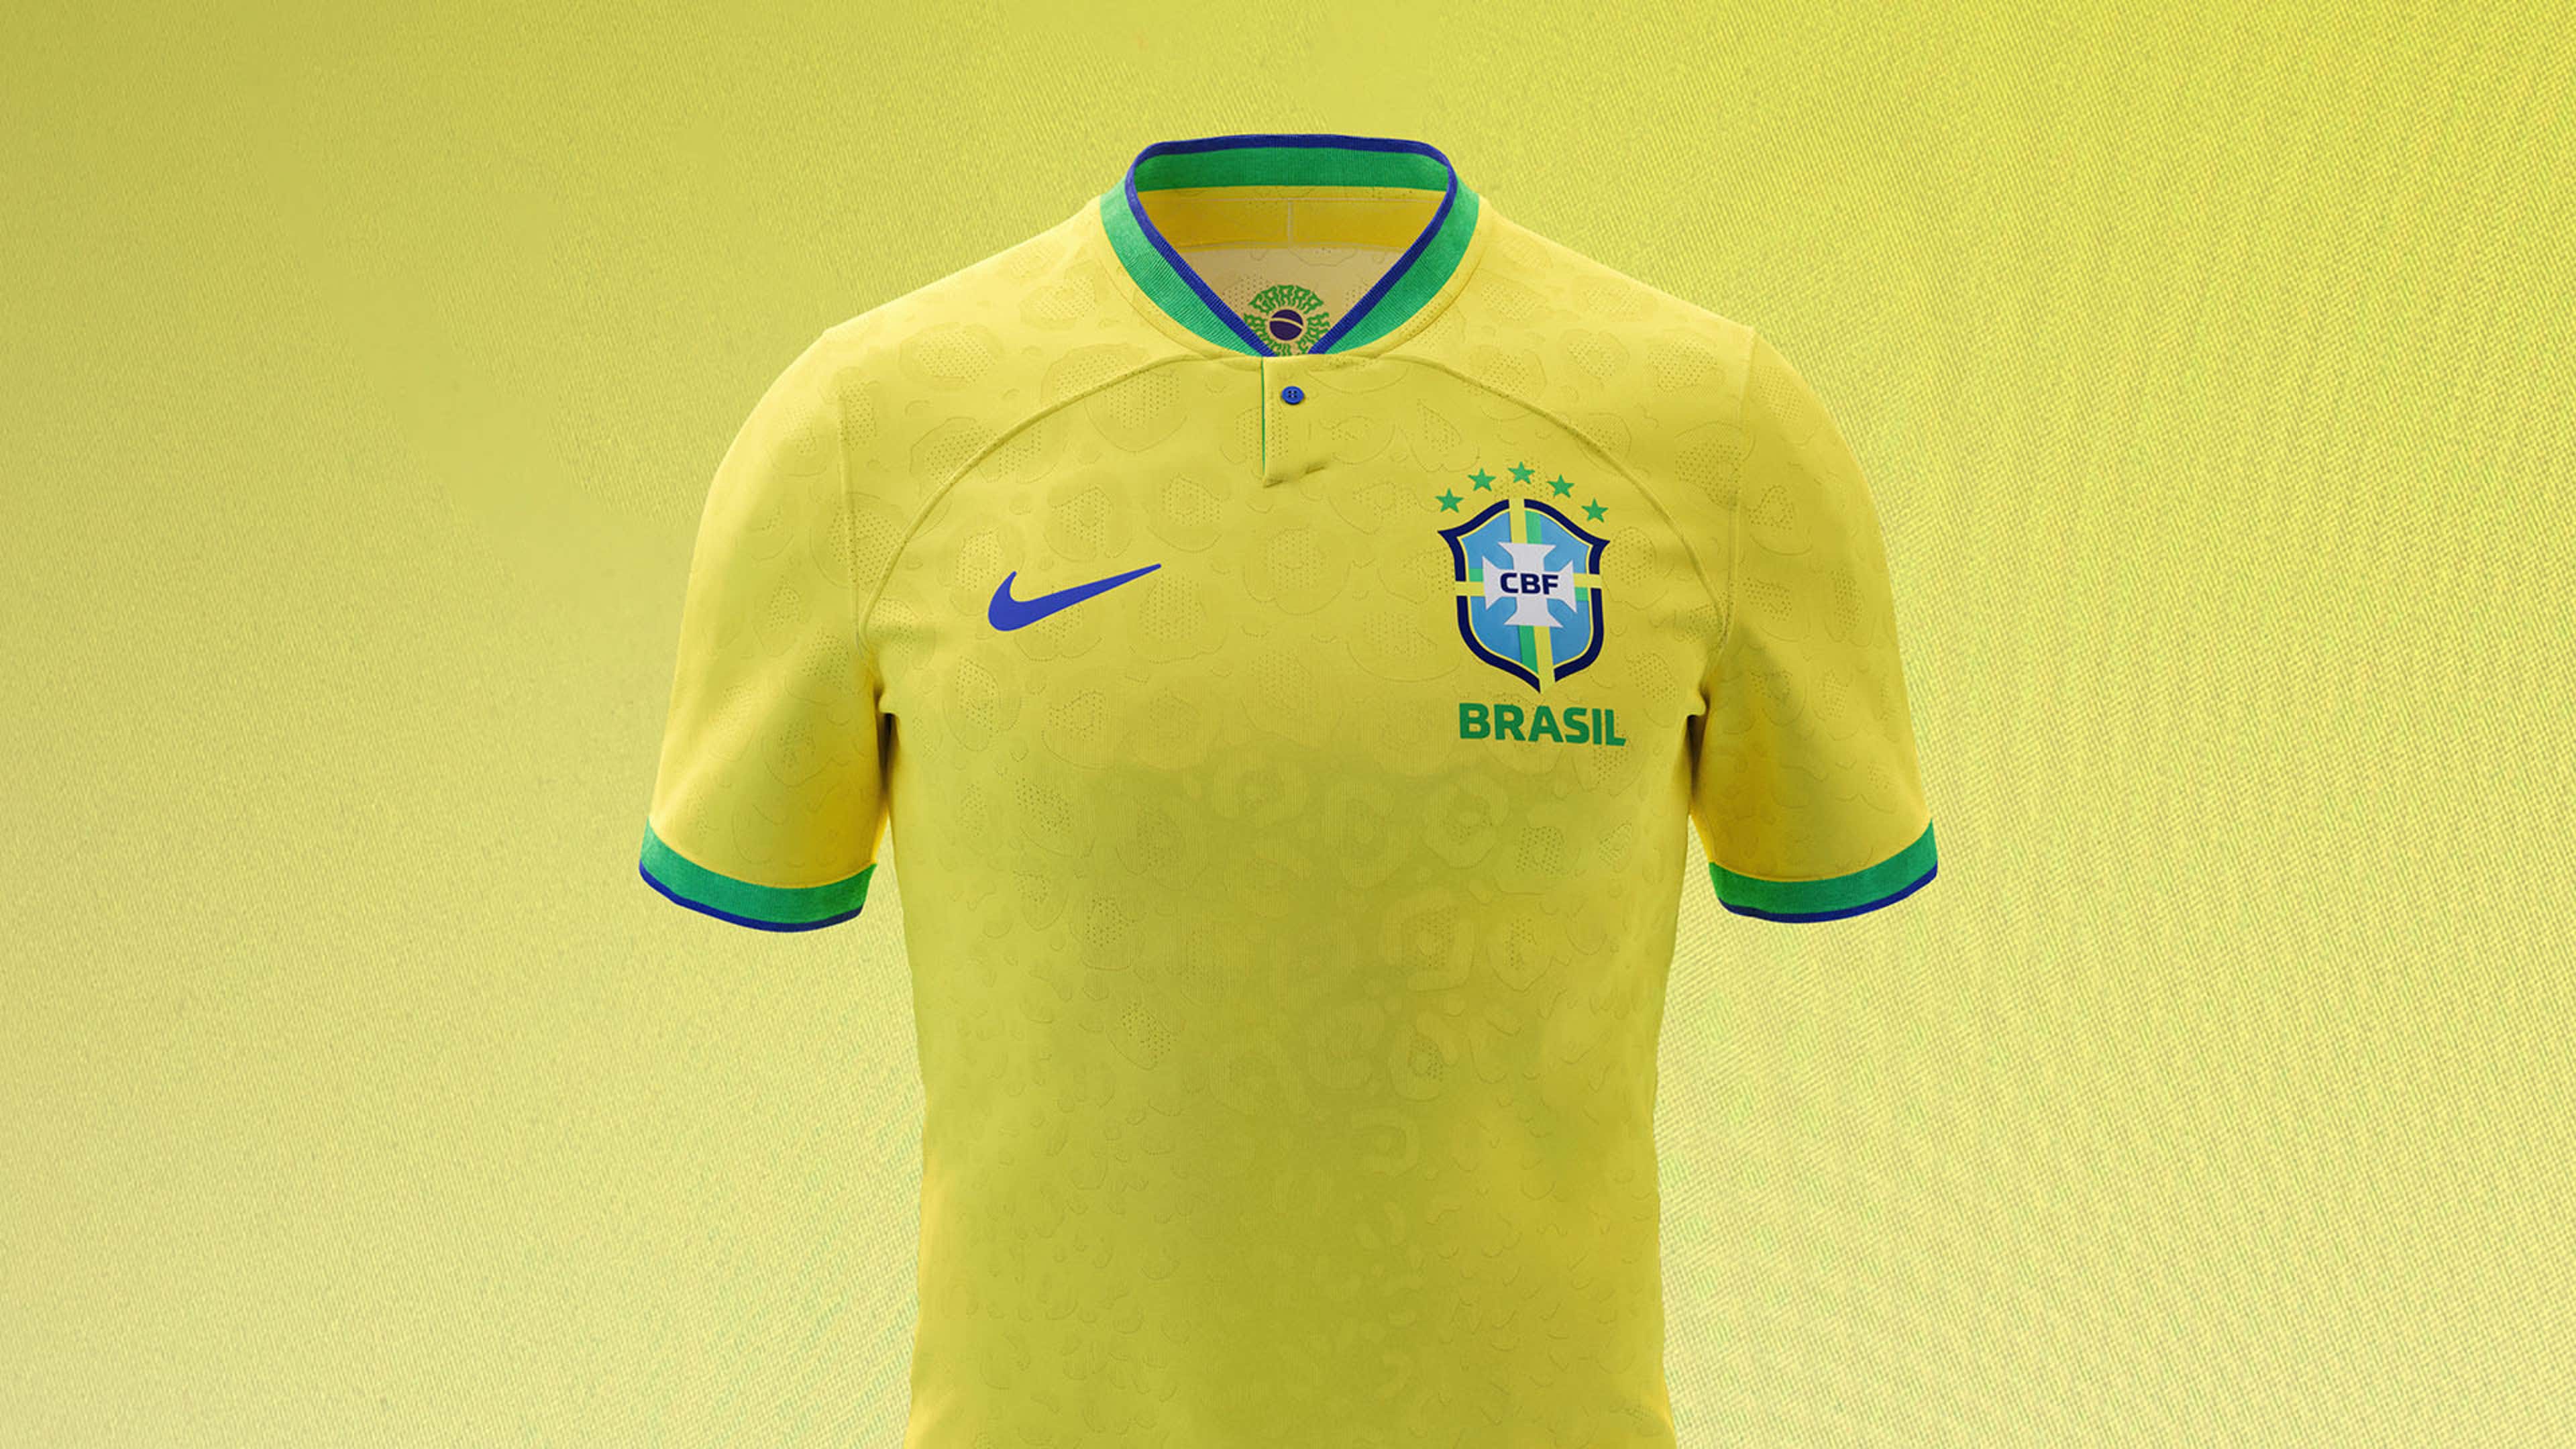 Seleção brasileira: relembre todas as camisas usadas em Copas do